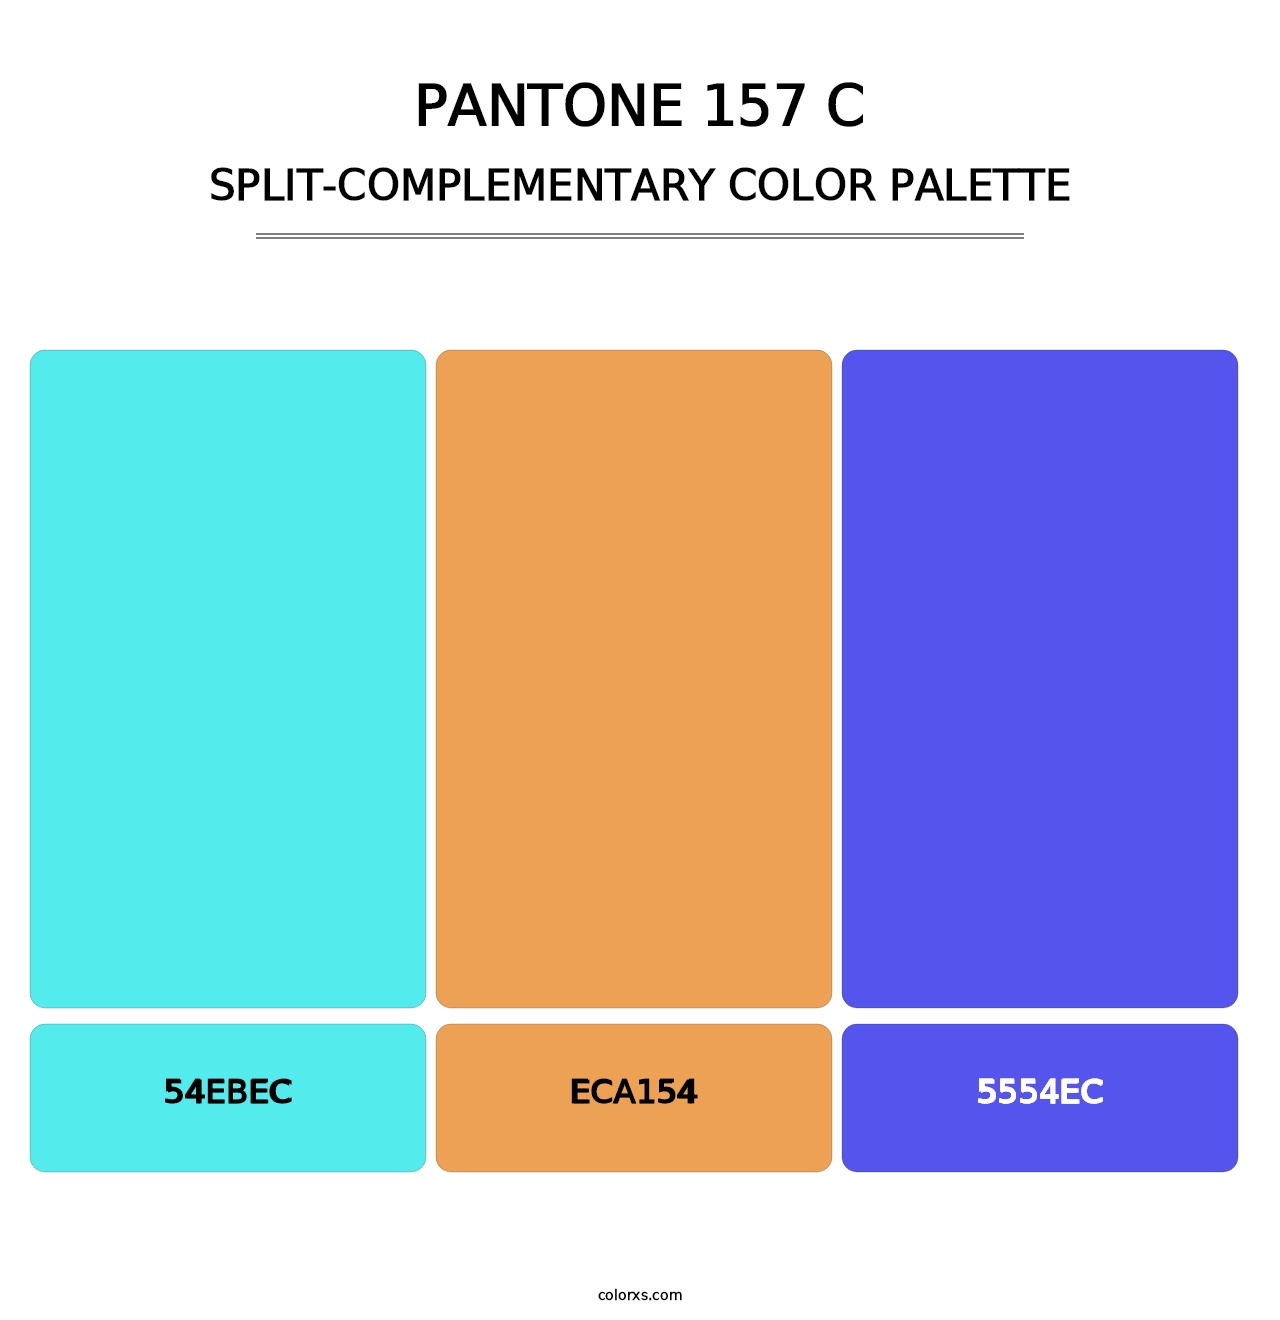 PANTONE 157 C - Split-Complementary Color Palette